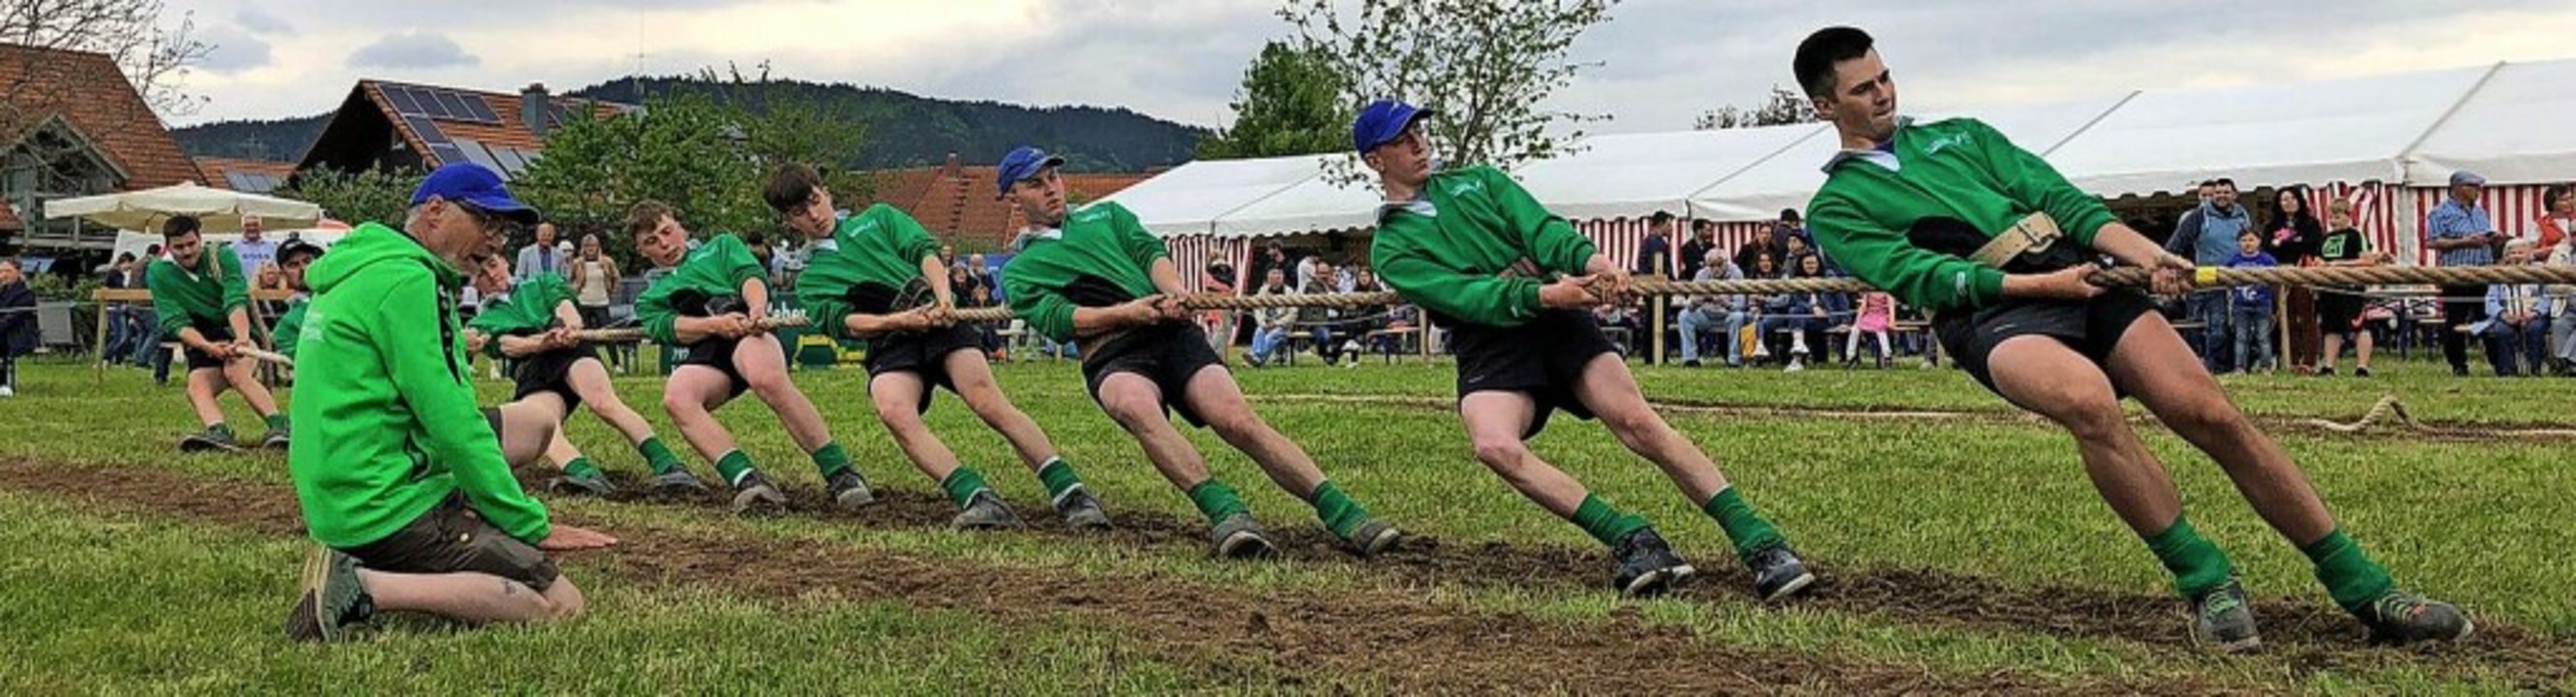 Die Tauziehfreunde aus Dietenbach laden zu einem Landesliga-Turnier  ein.  | Foto: Tauziehfreunde